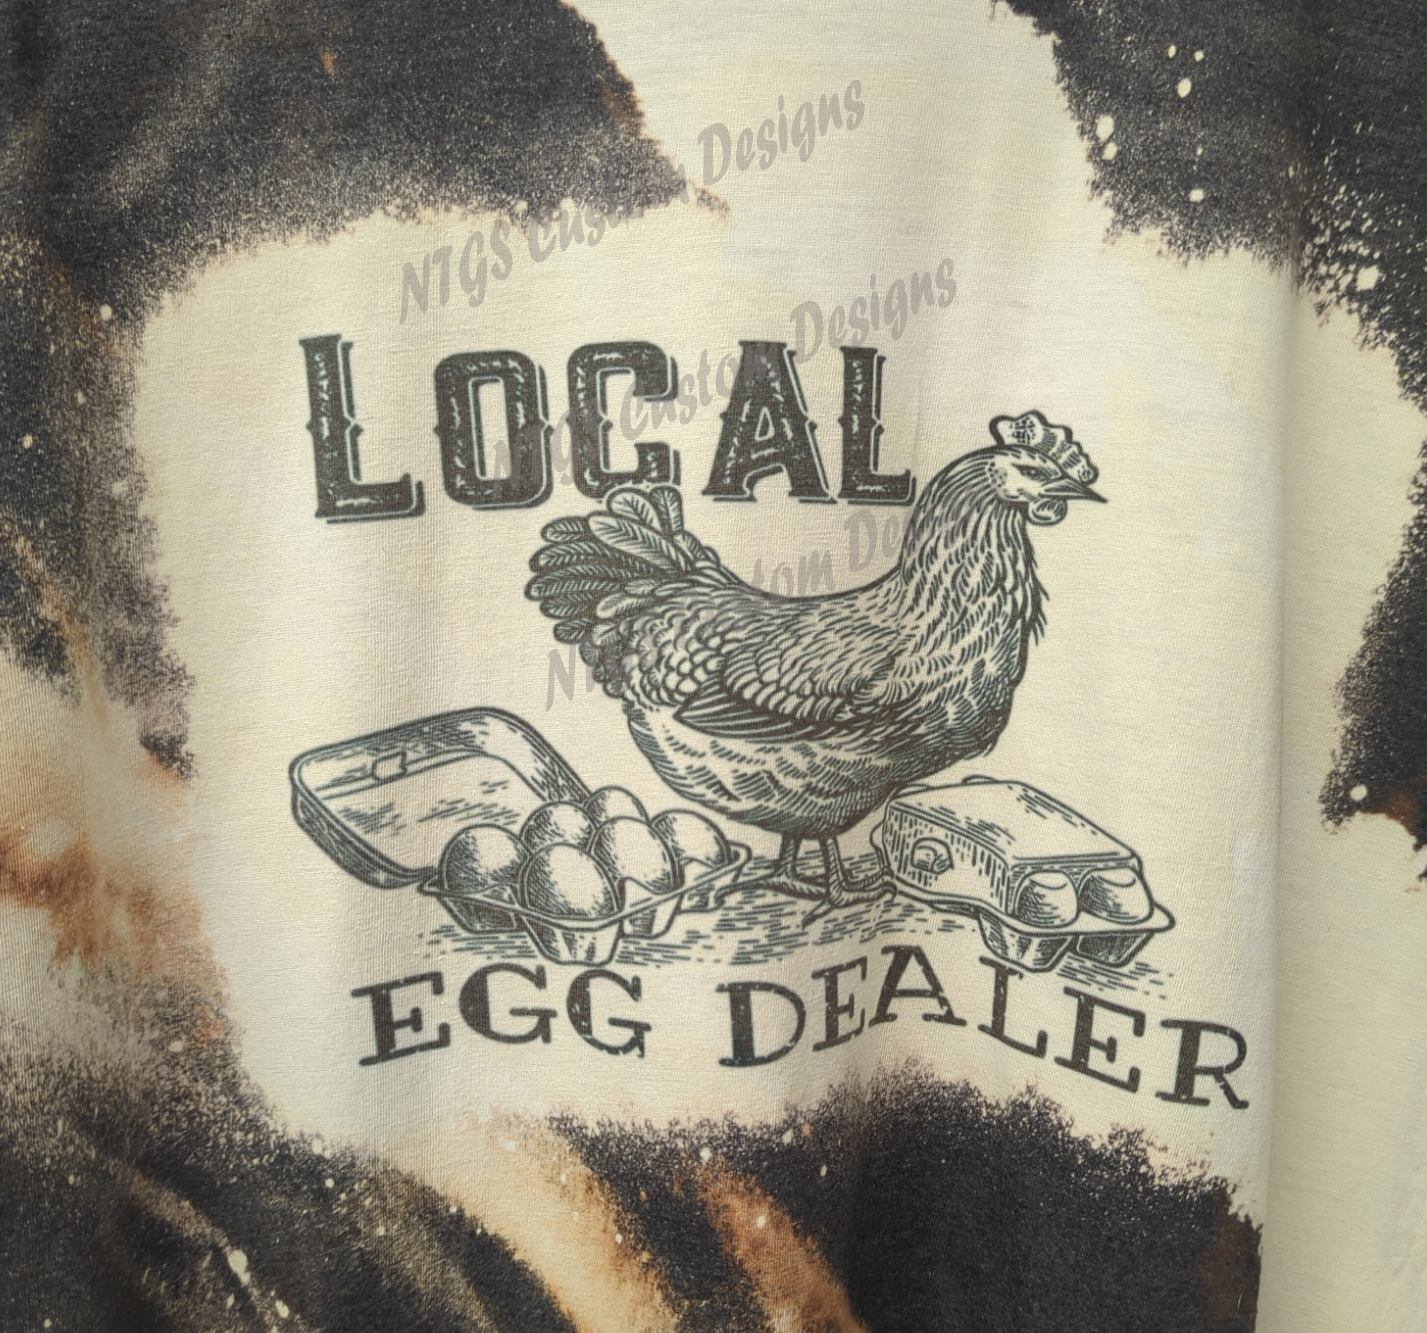 Local egg dealer